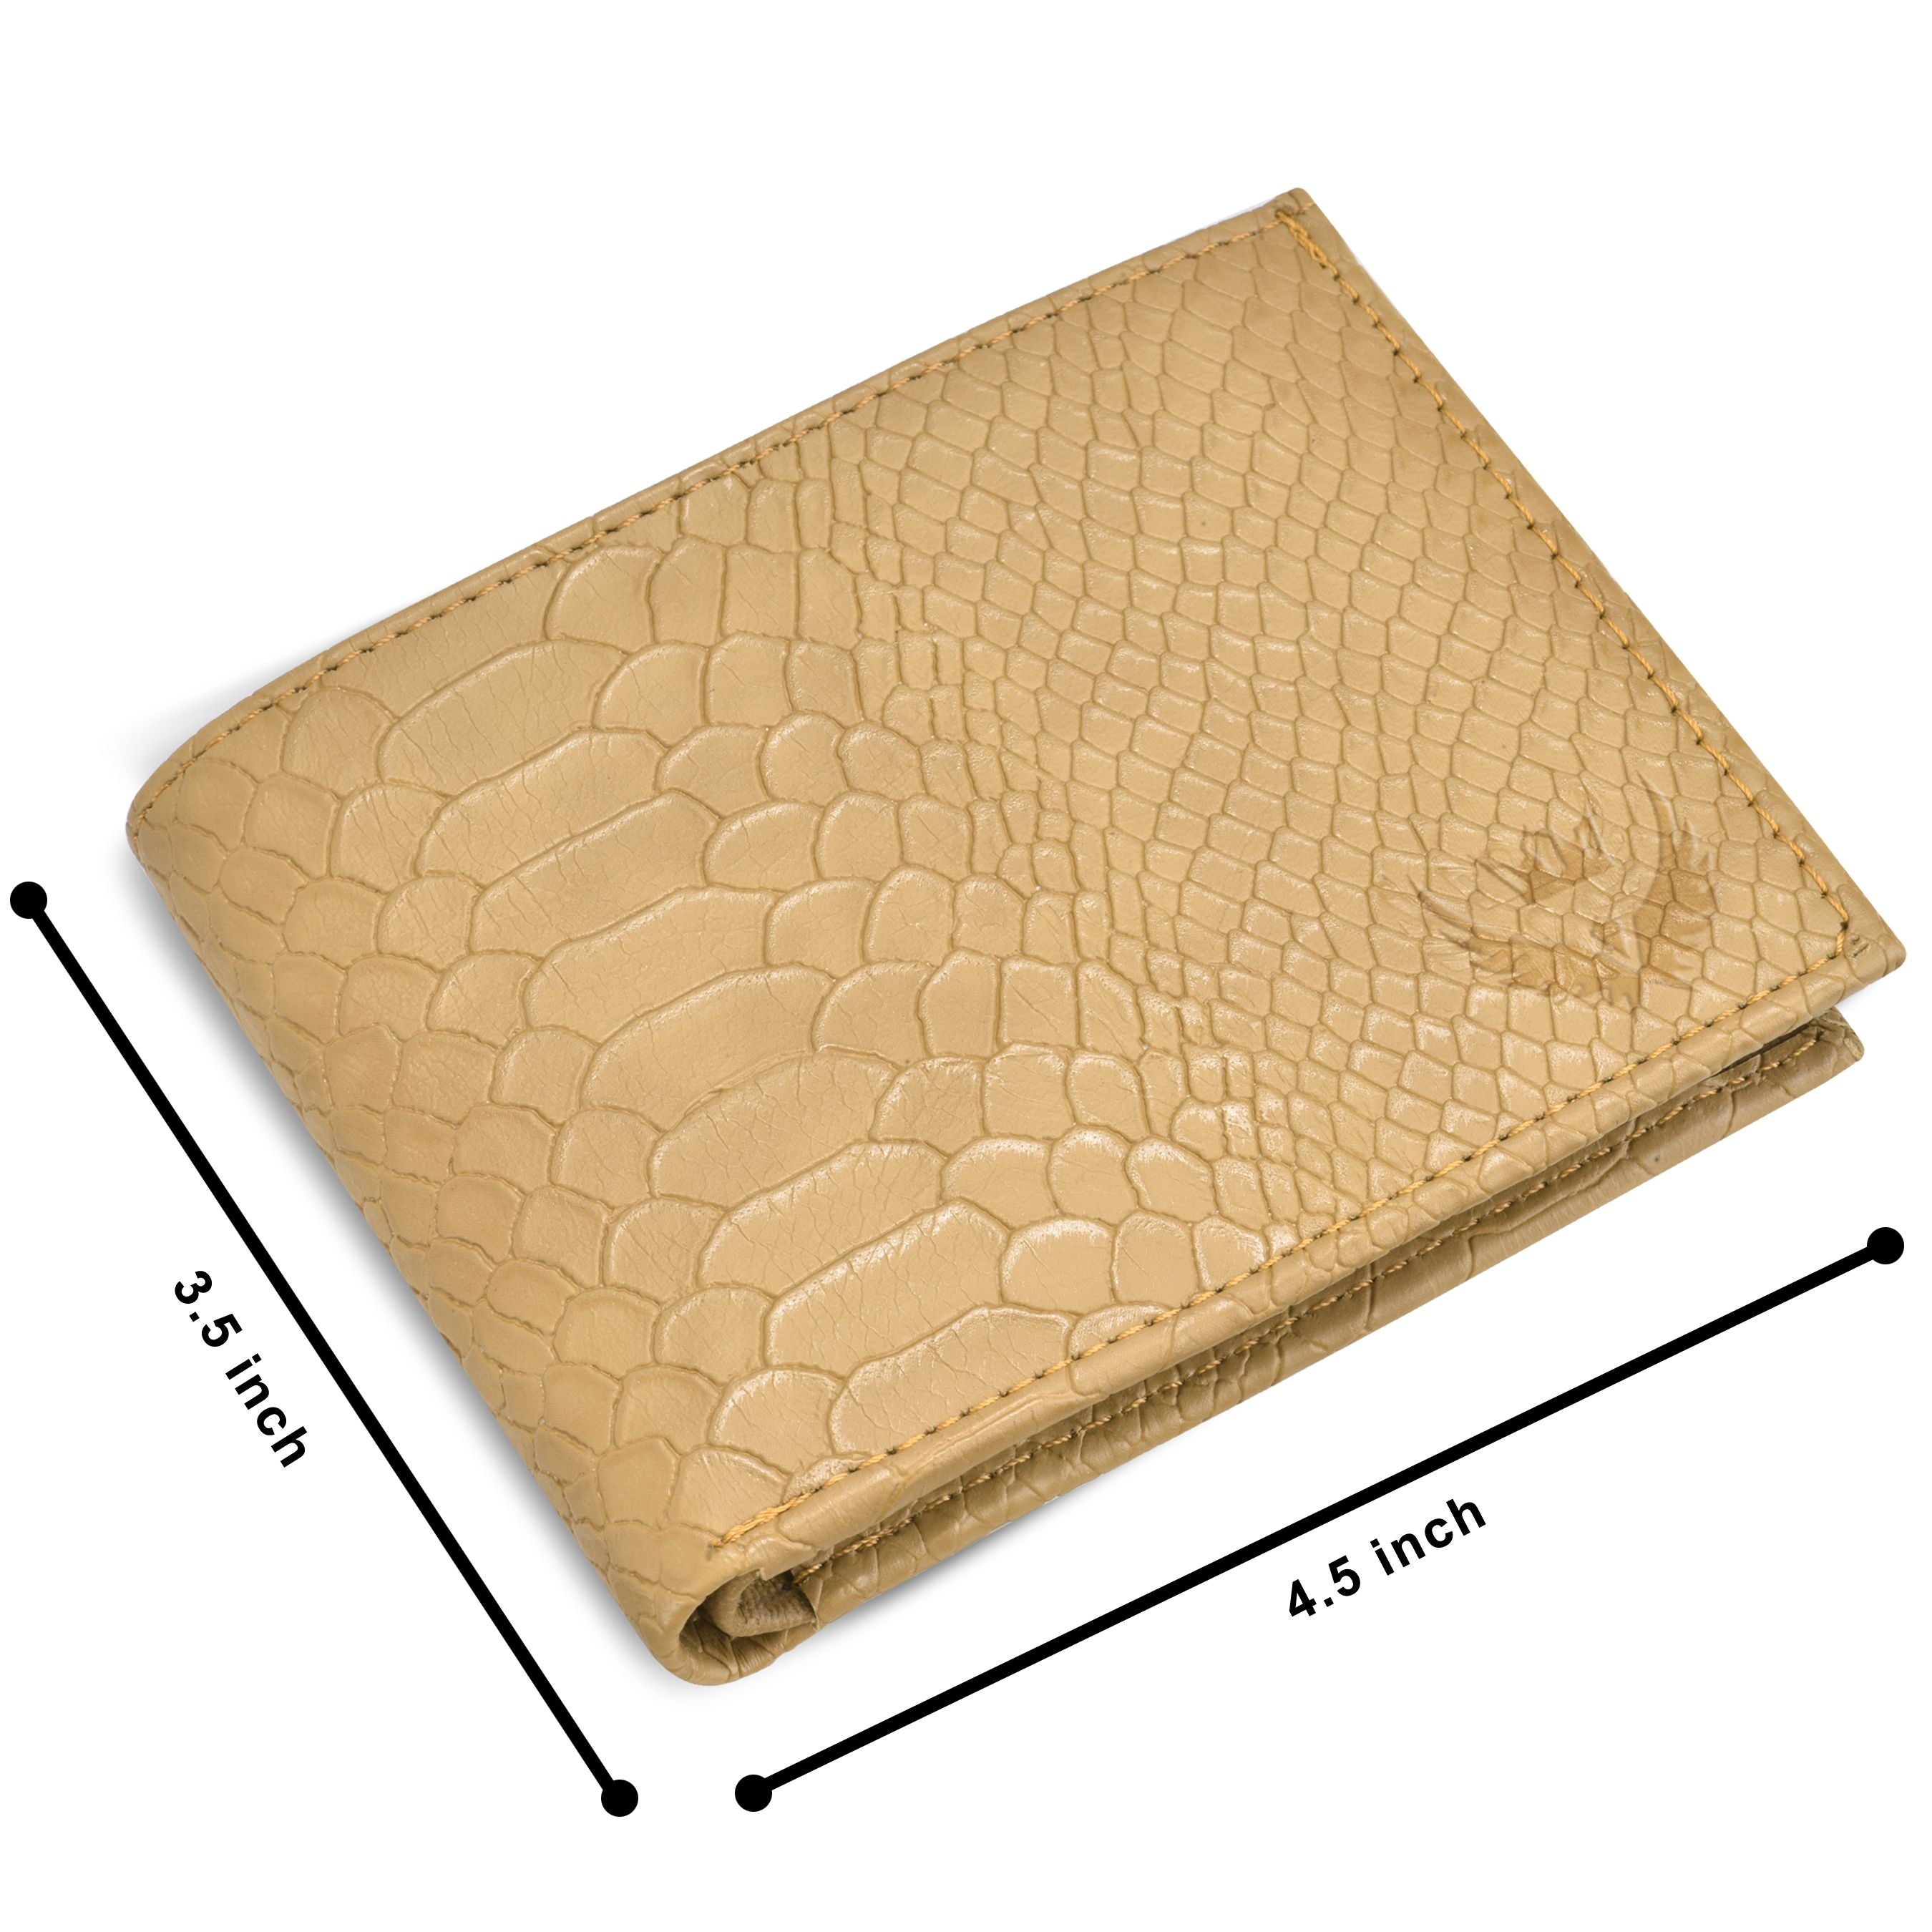  Lorenz Tan Leather Wallet 